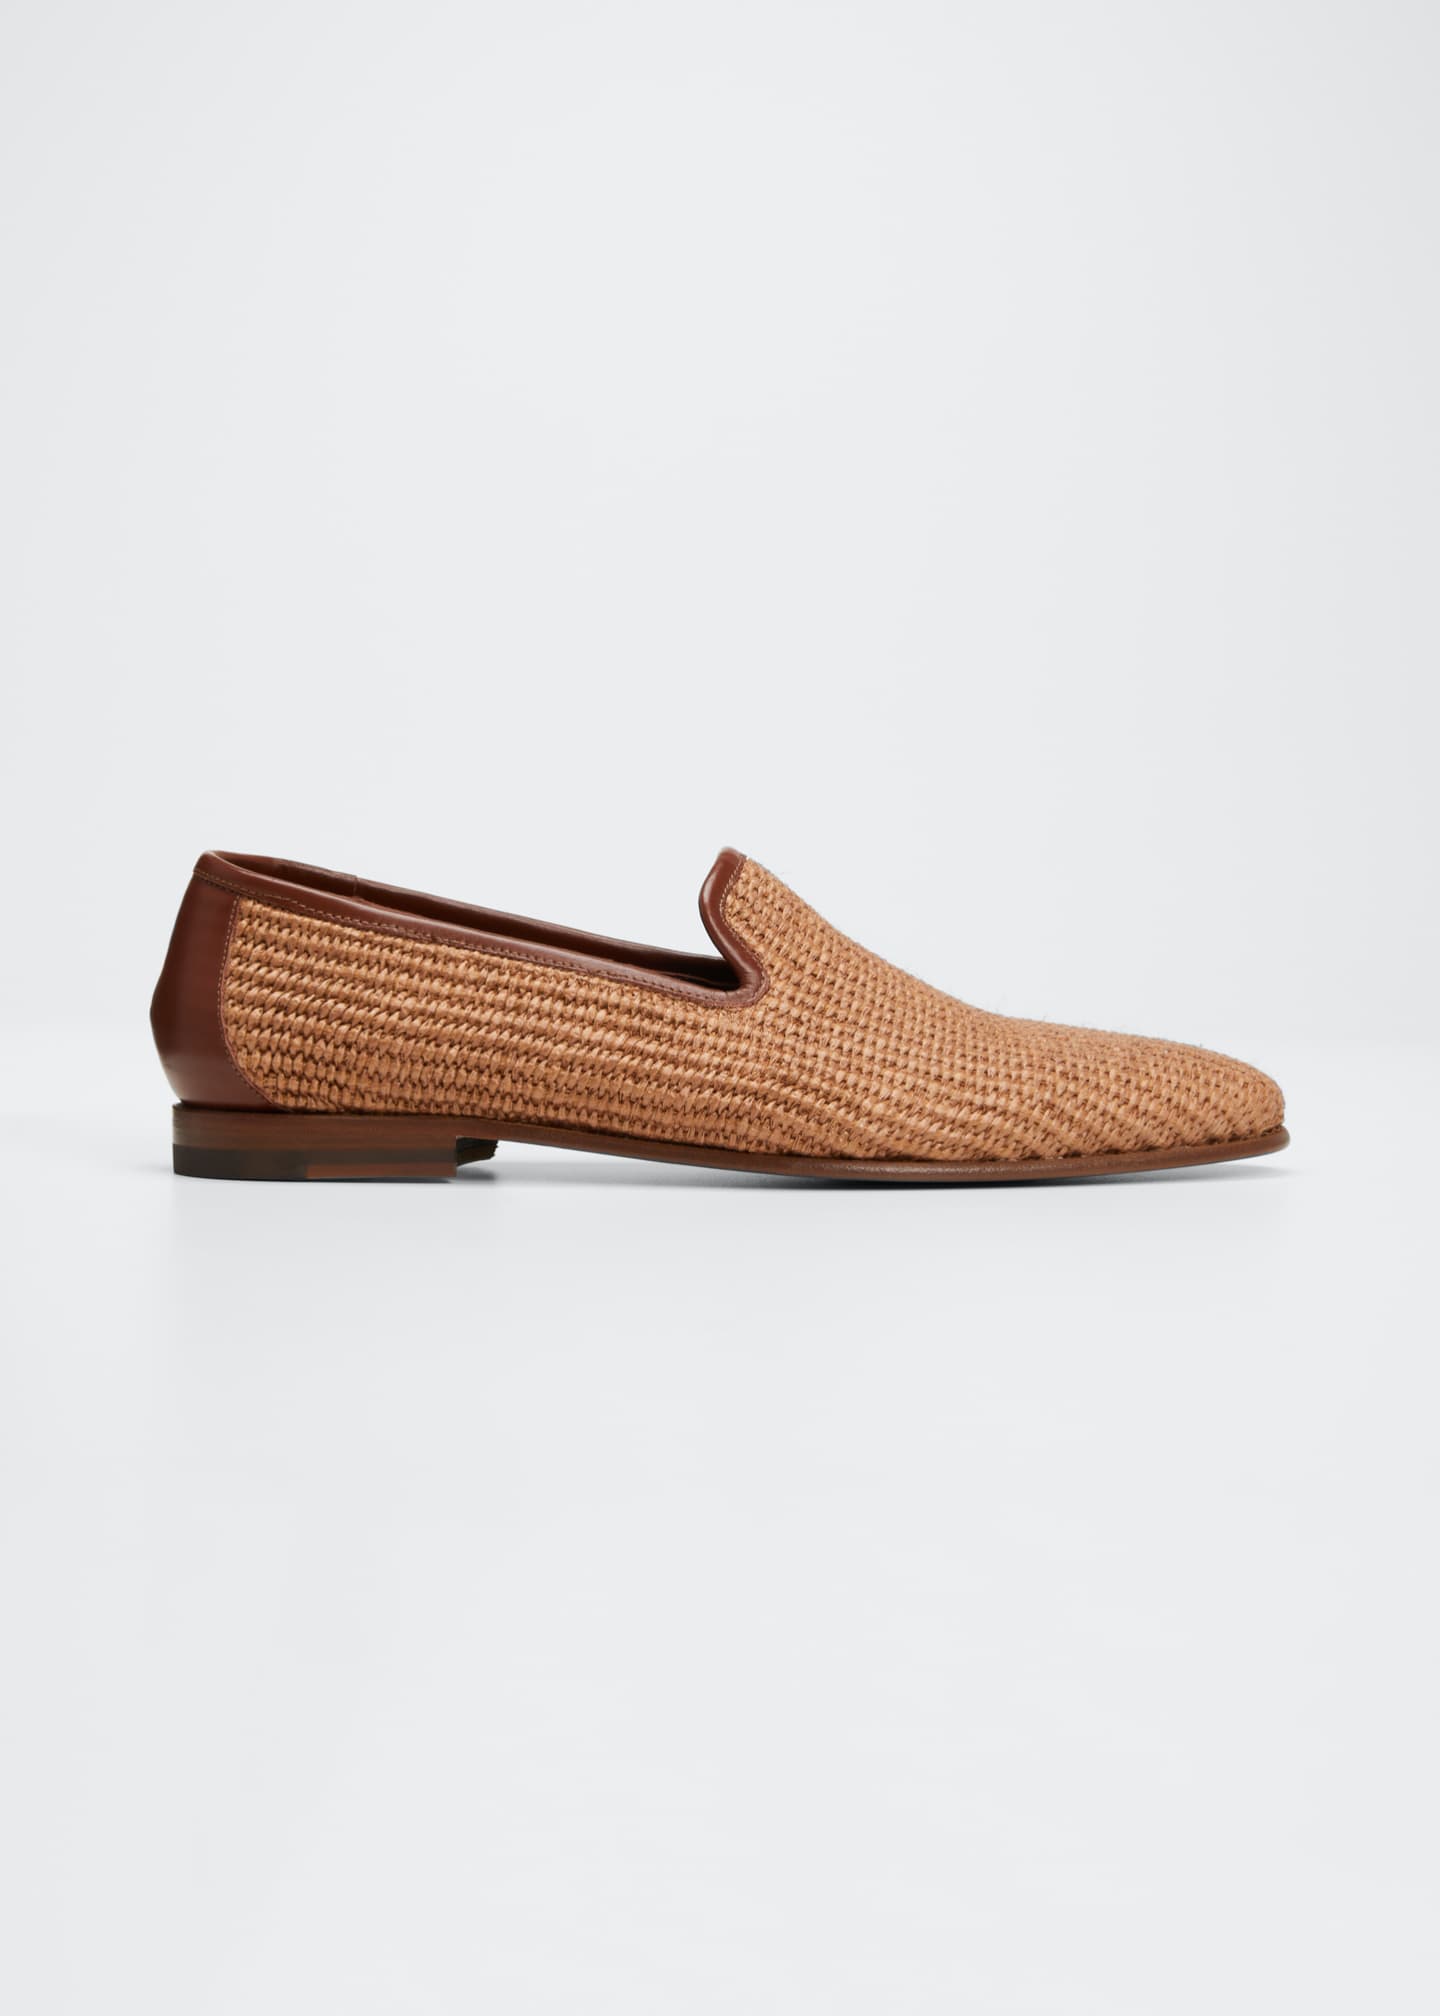 Manolo Blahnik Men's Raffia Woven Leather Loafers - Bergdorf Goodman